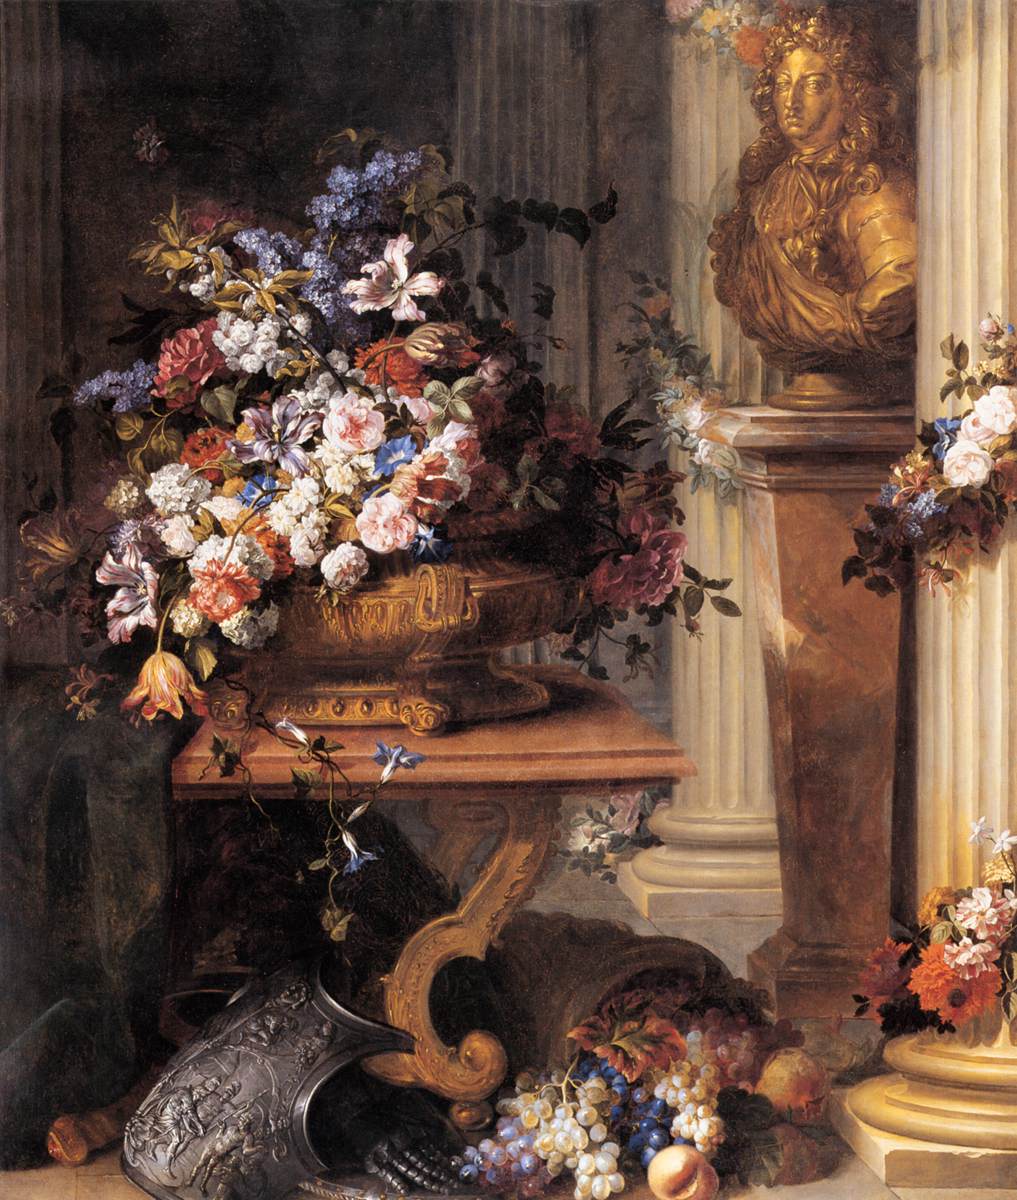 Kwiaty w złotym wazonie, popiersie Ludwika XIV, róg obfitości i zbroi